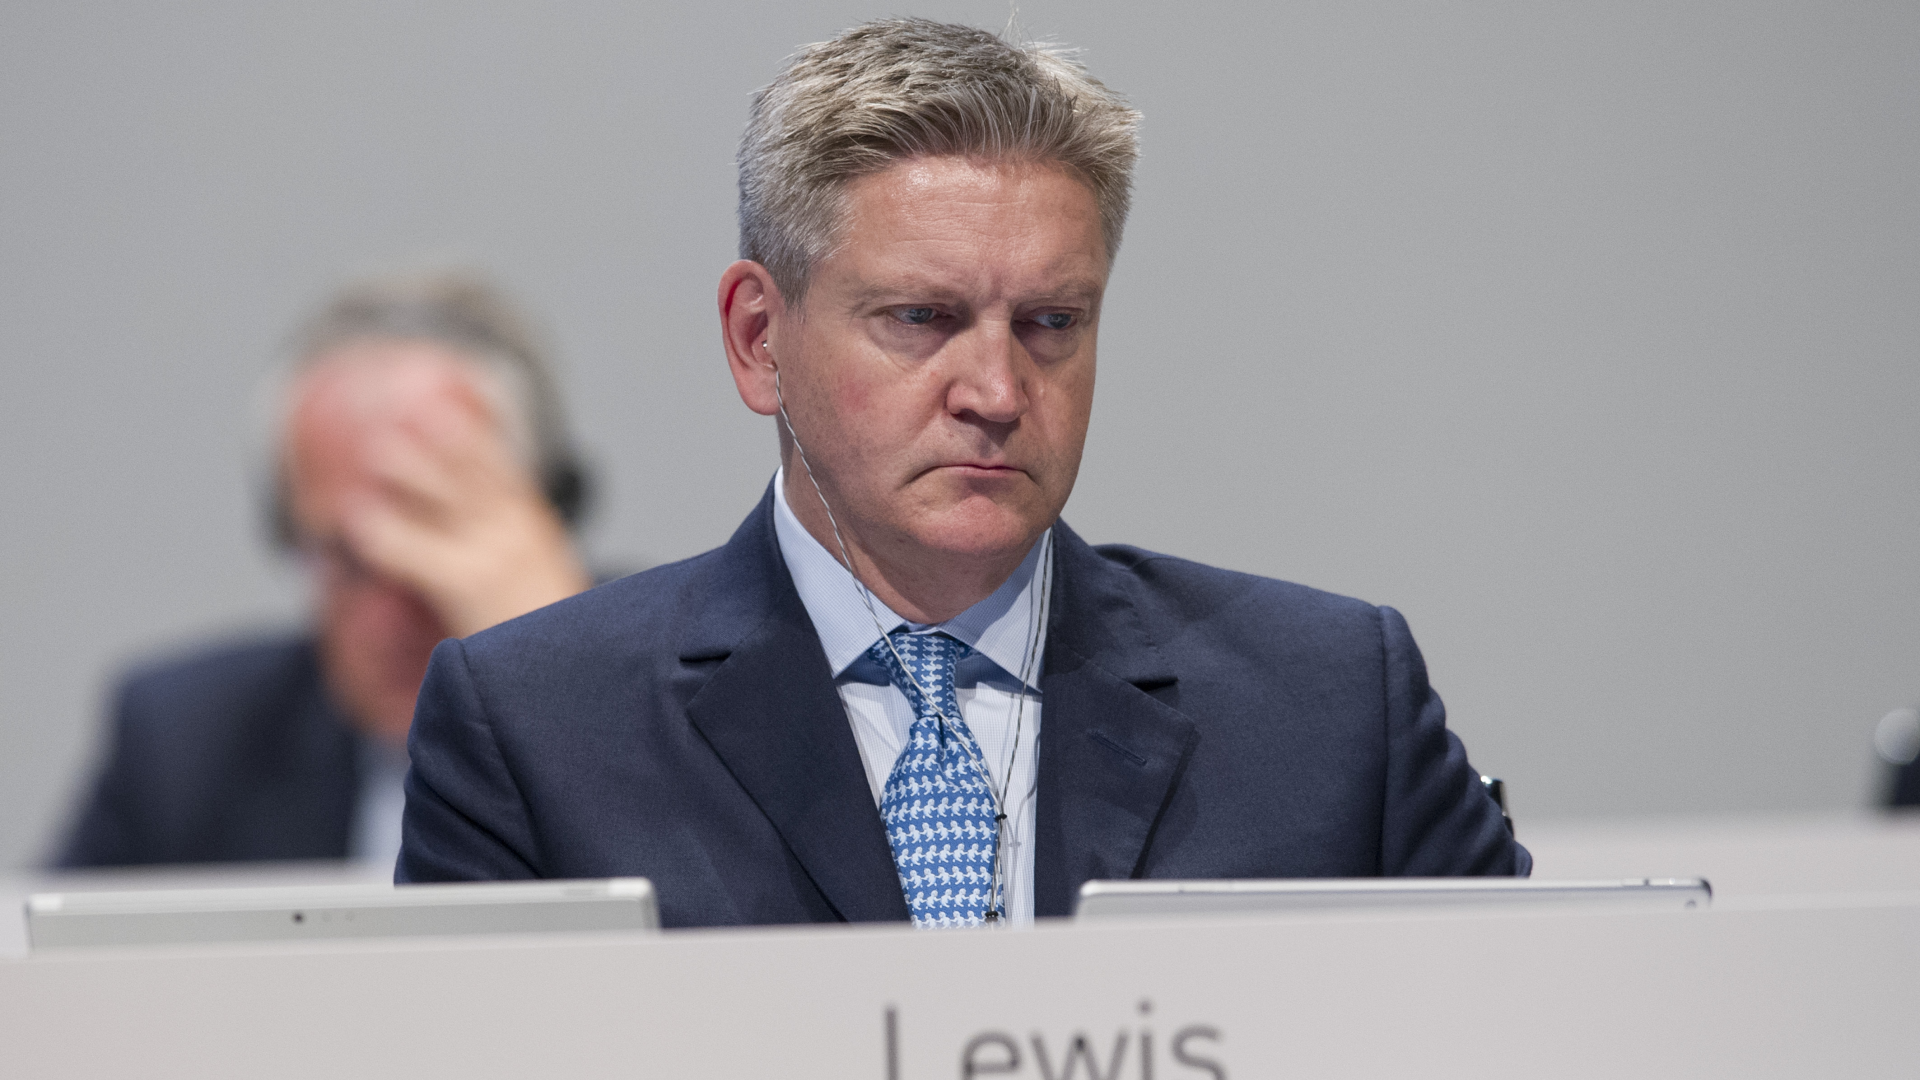 Stuart Lewis, Risikovorstand der Deutschen Bank | Foto: picture alliance / SvenSimon